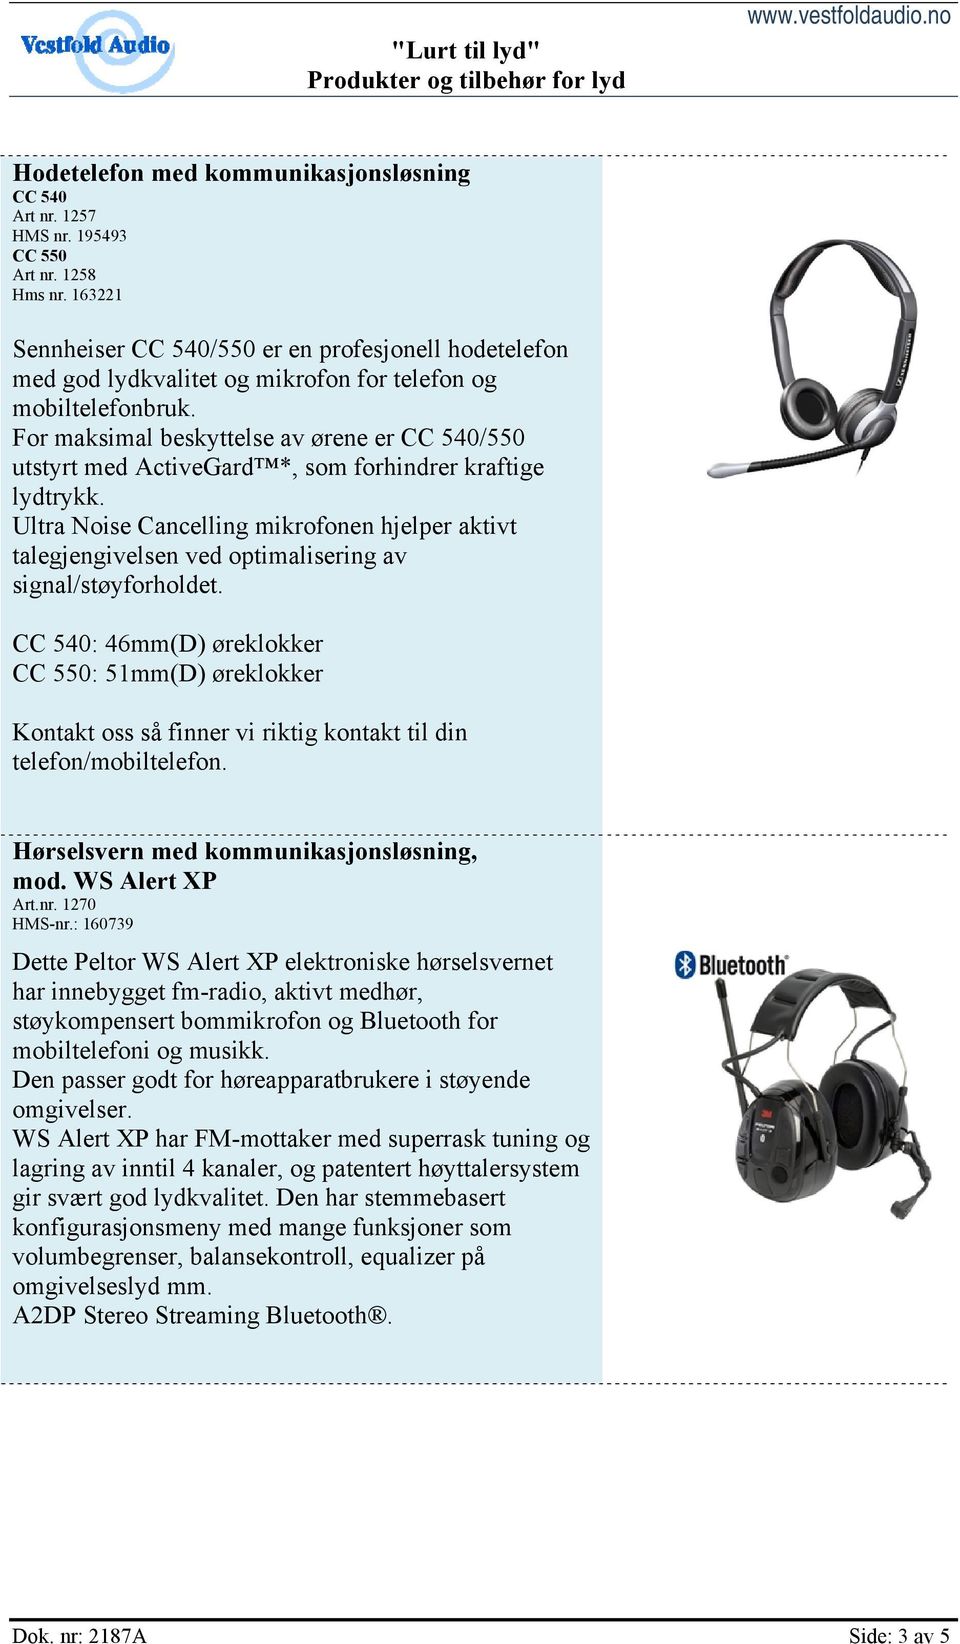 For maksimal beskyttelse av ørene er CC 540/550 utstyrt med ActiveGard *, som forhindrer kraftige lydtrykk.